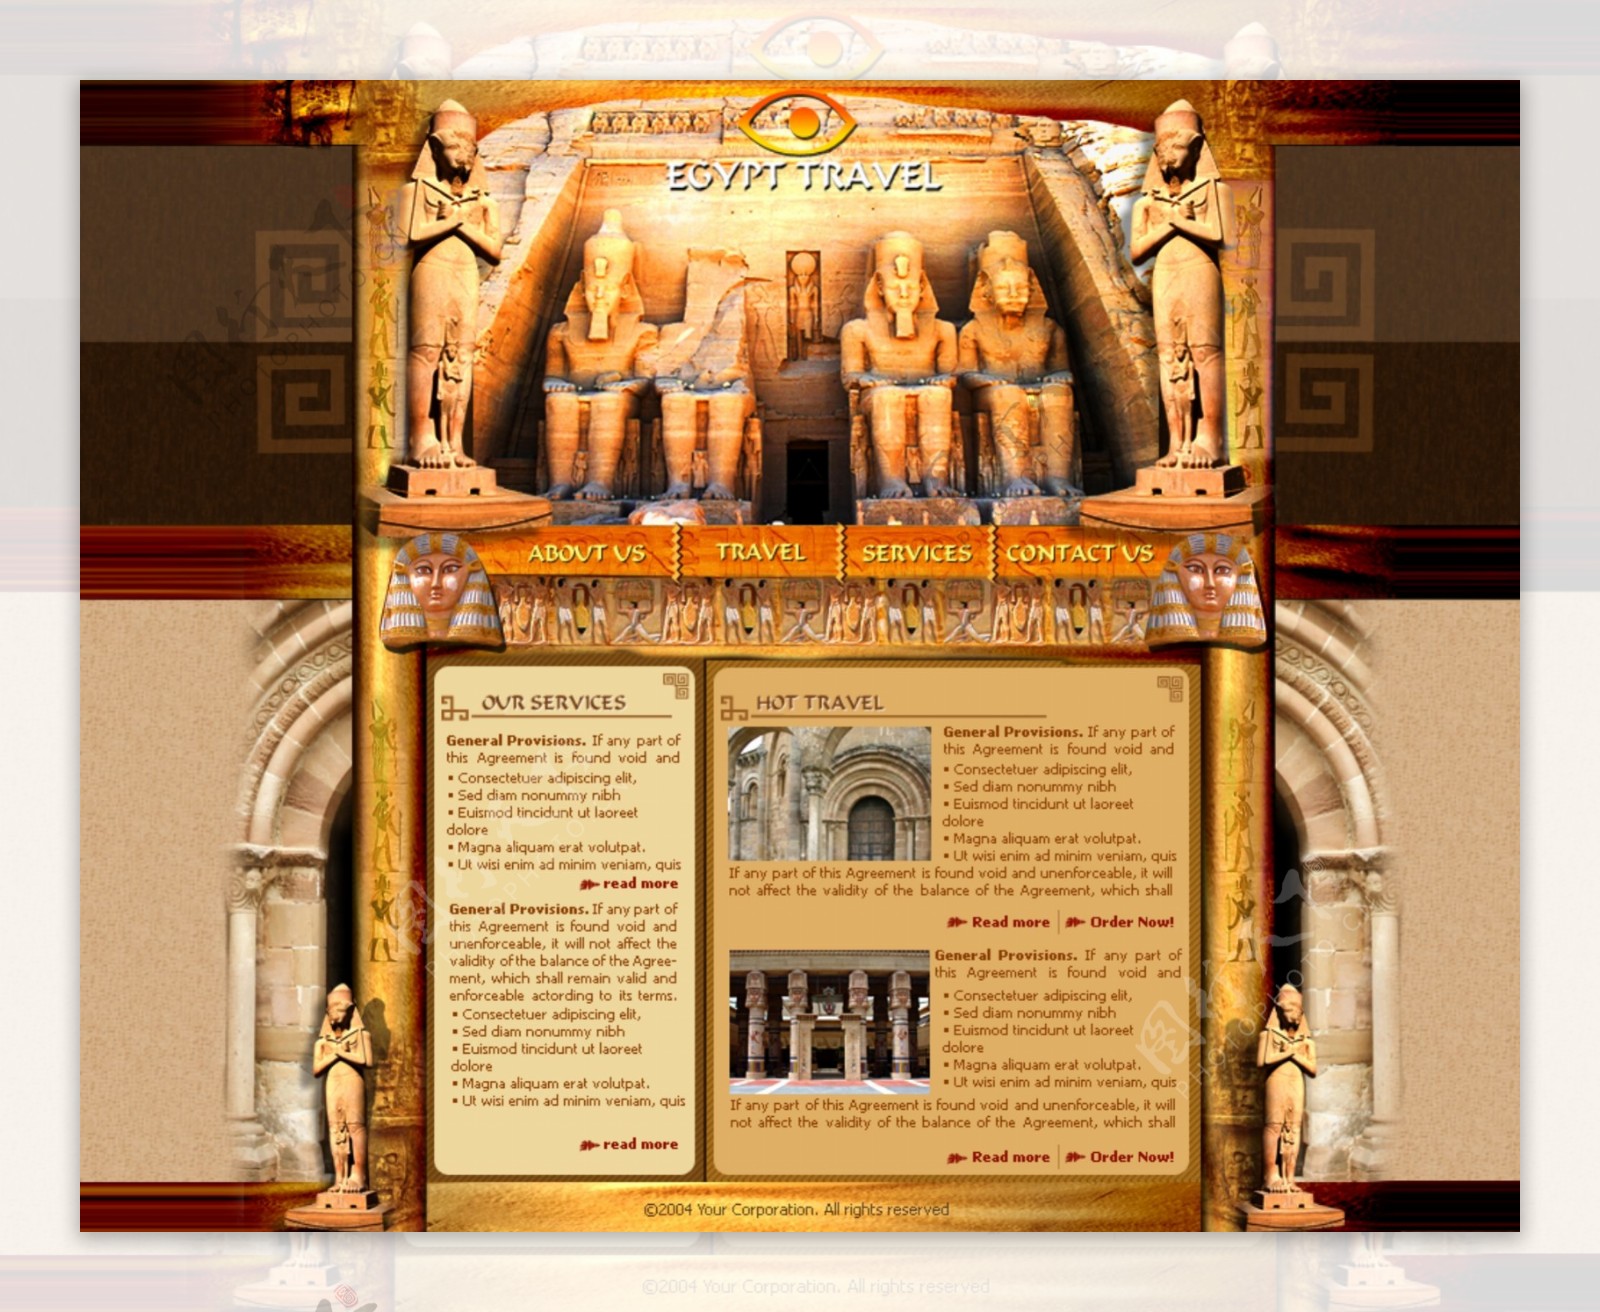 埃及奇迹旅游信息网页模板